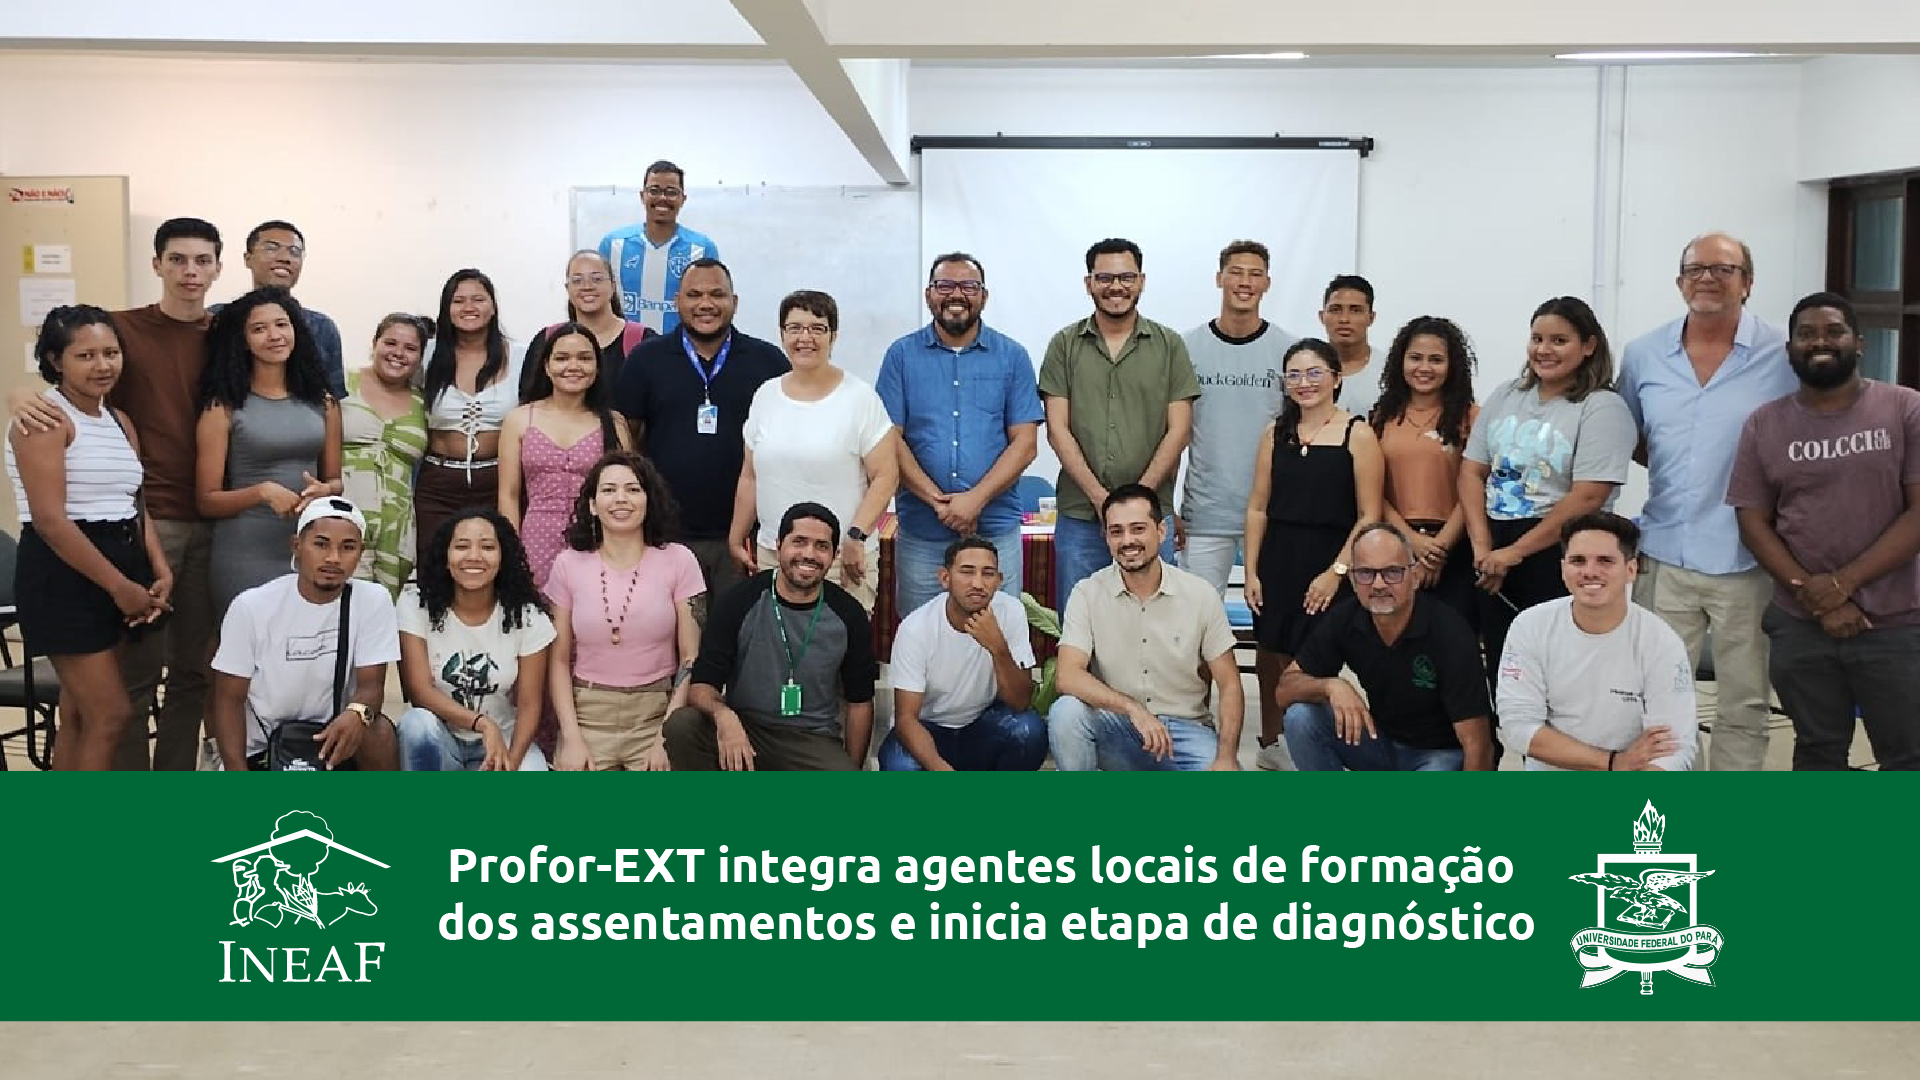 Profor-EXT integra agentes locais de formação dos assentamentos e inicia etapa de diagnóstico